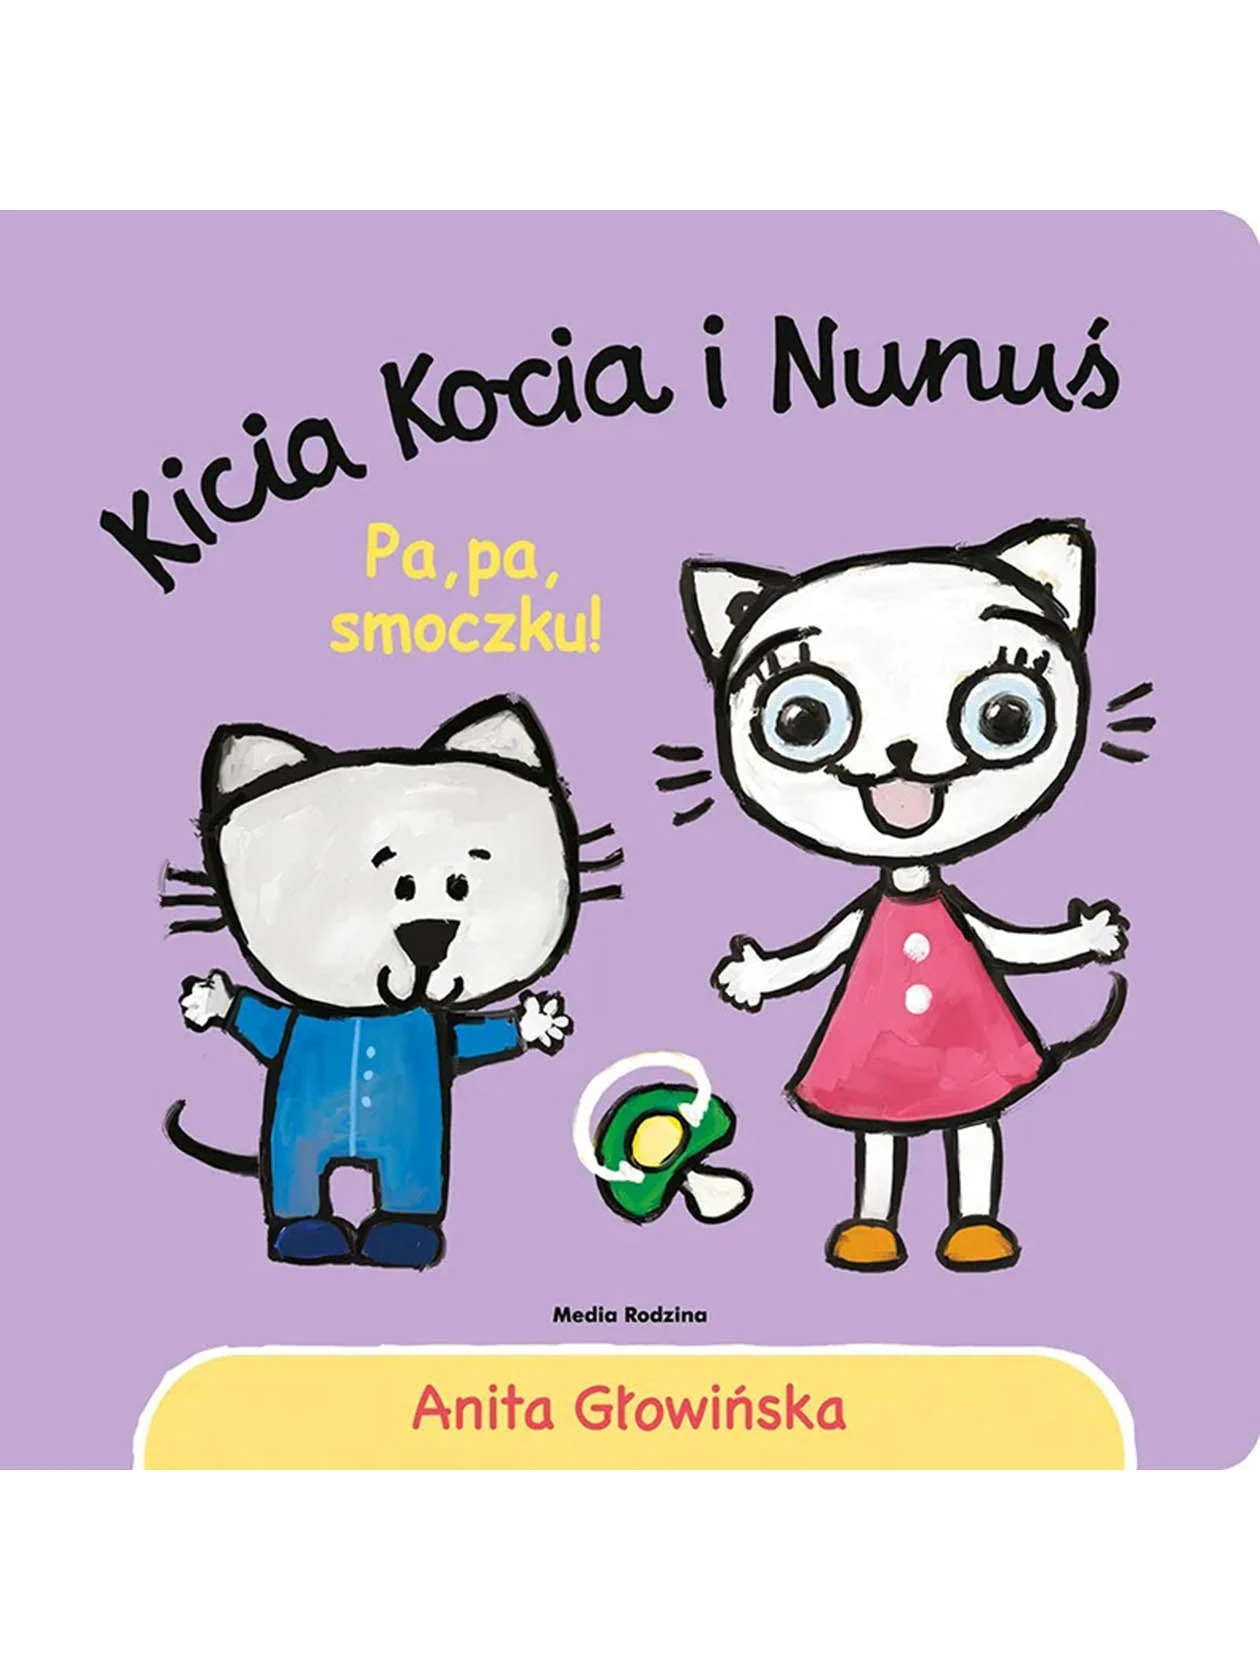 kicia-kocia-i-nunus-pa-pa-smoczku-wydawnictwo-media-rodzina